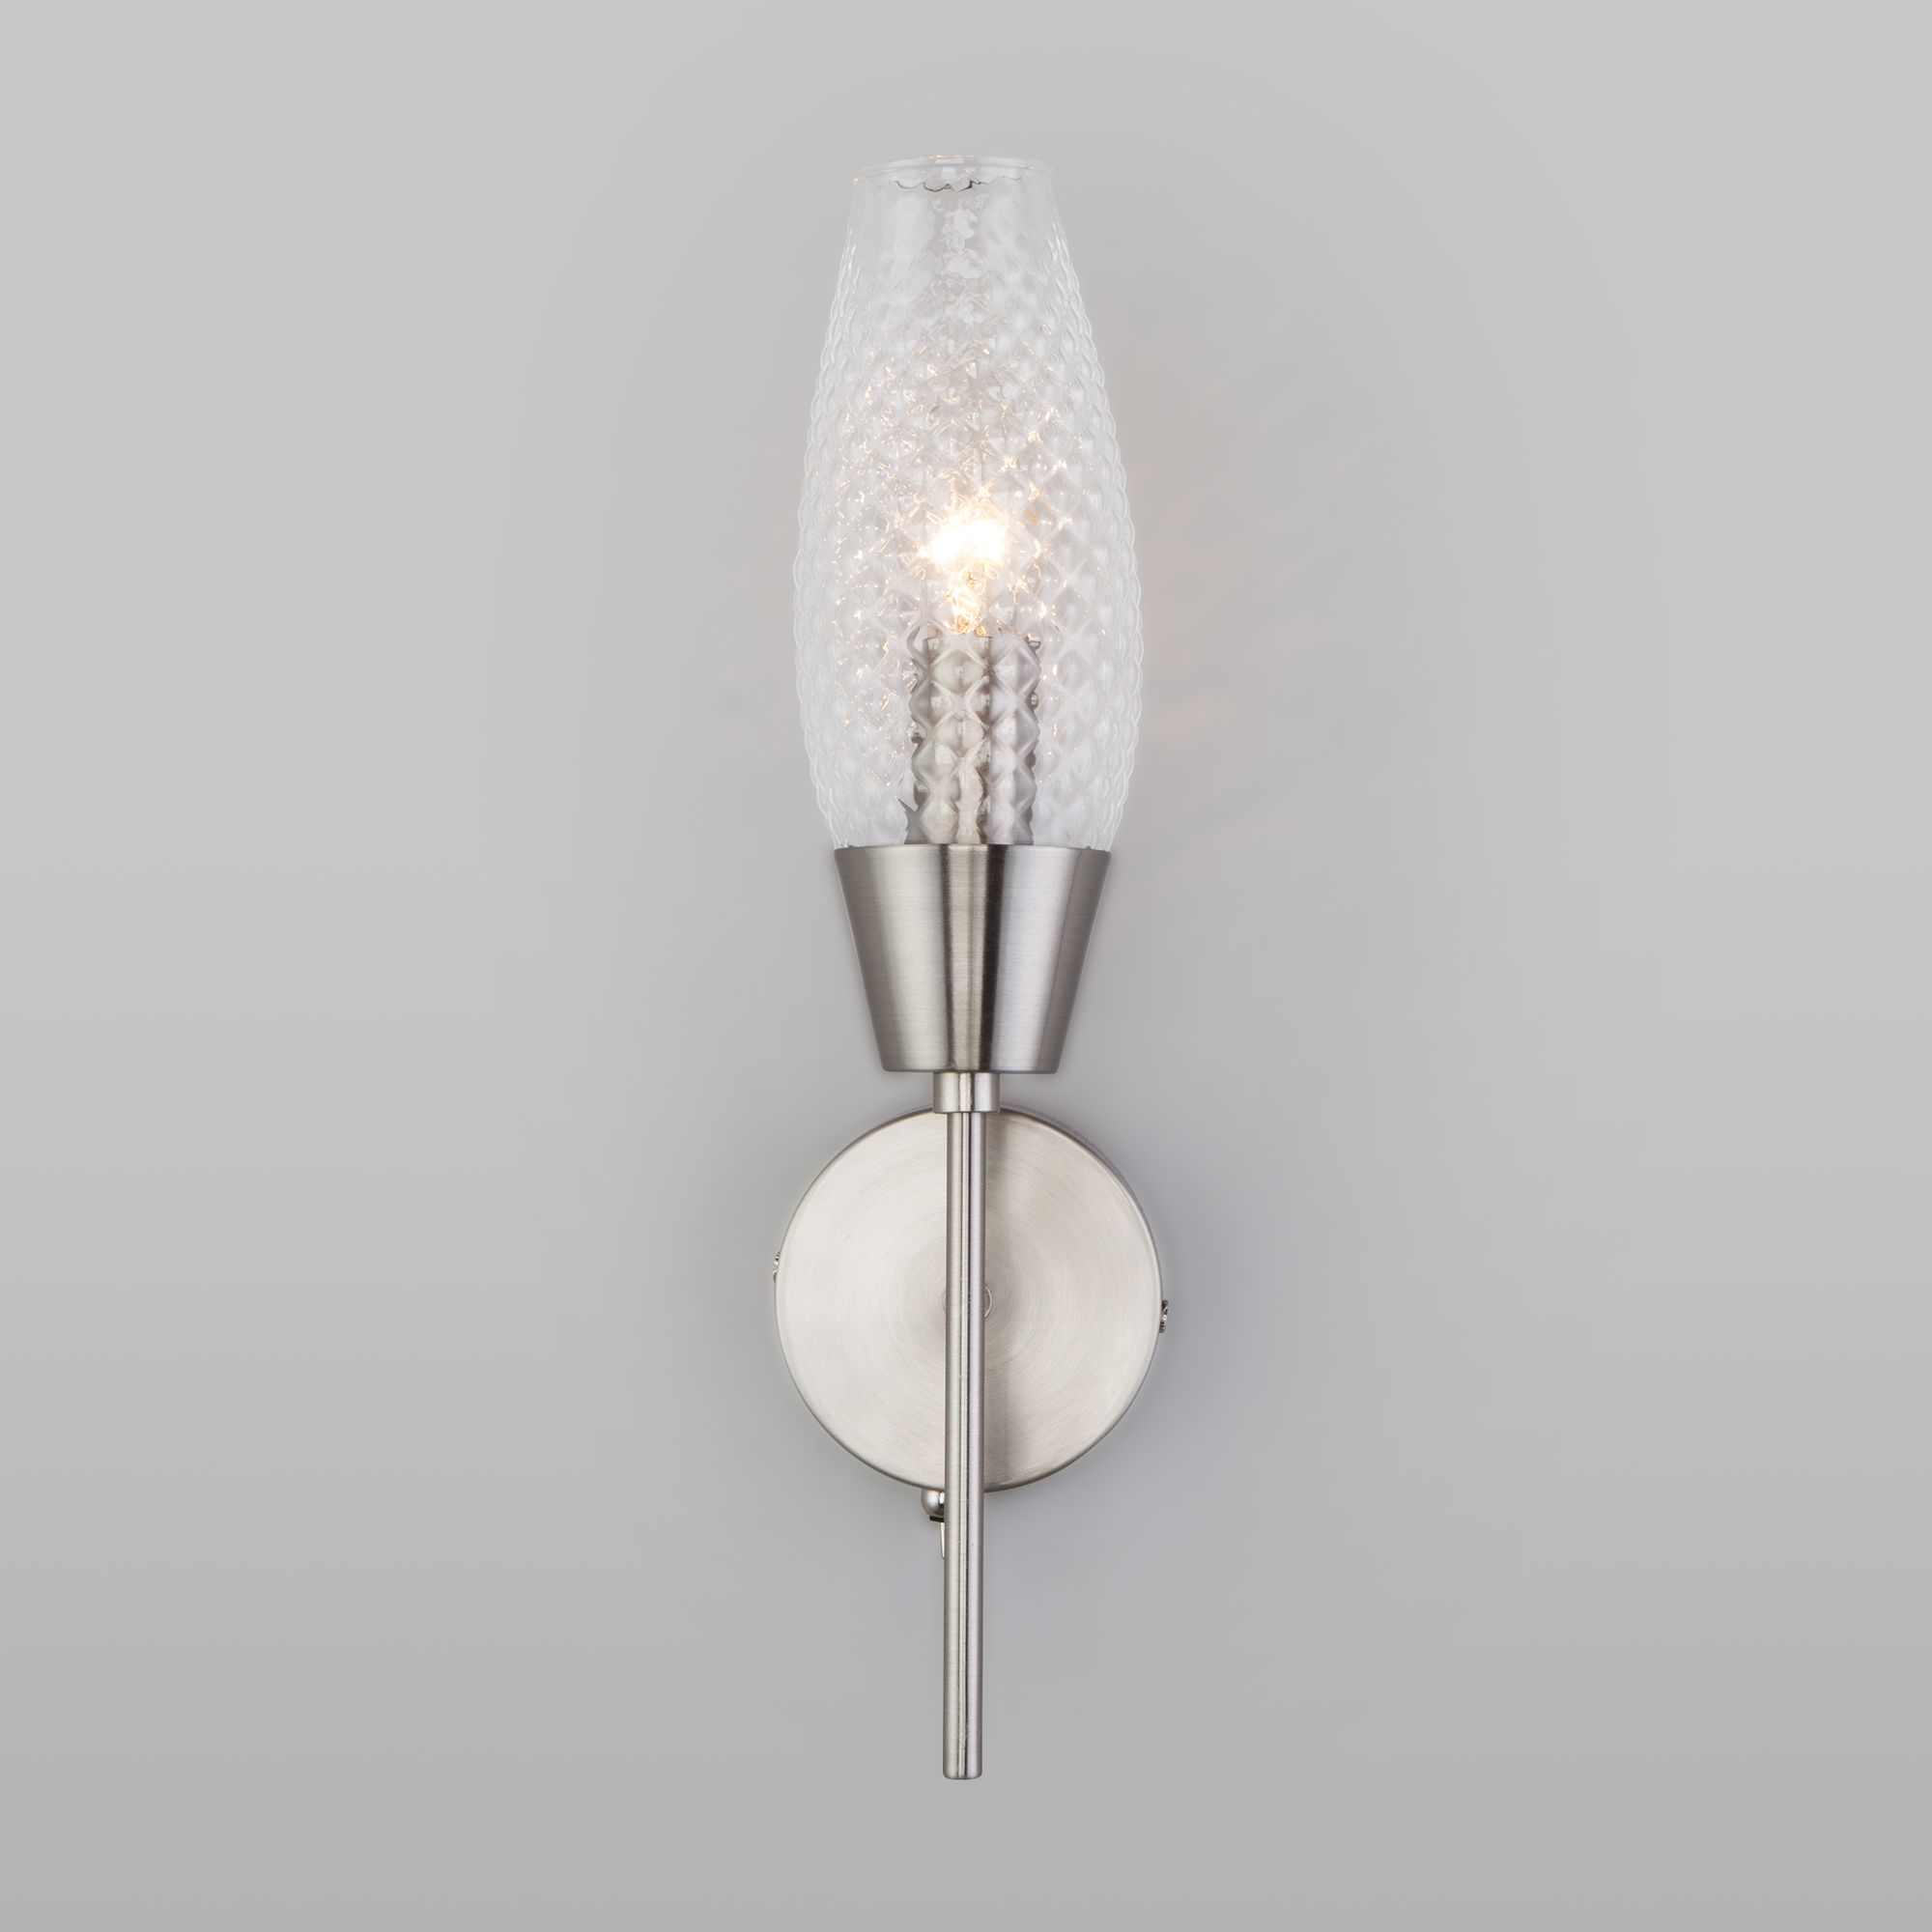 Настенный светильник со стеклянным плафоном Eurosvet Thalia 60140/1 сатин-никель. Фото 2